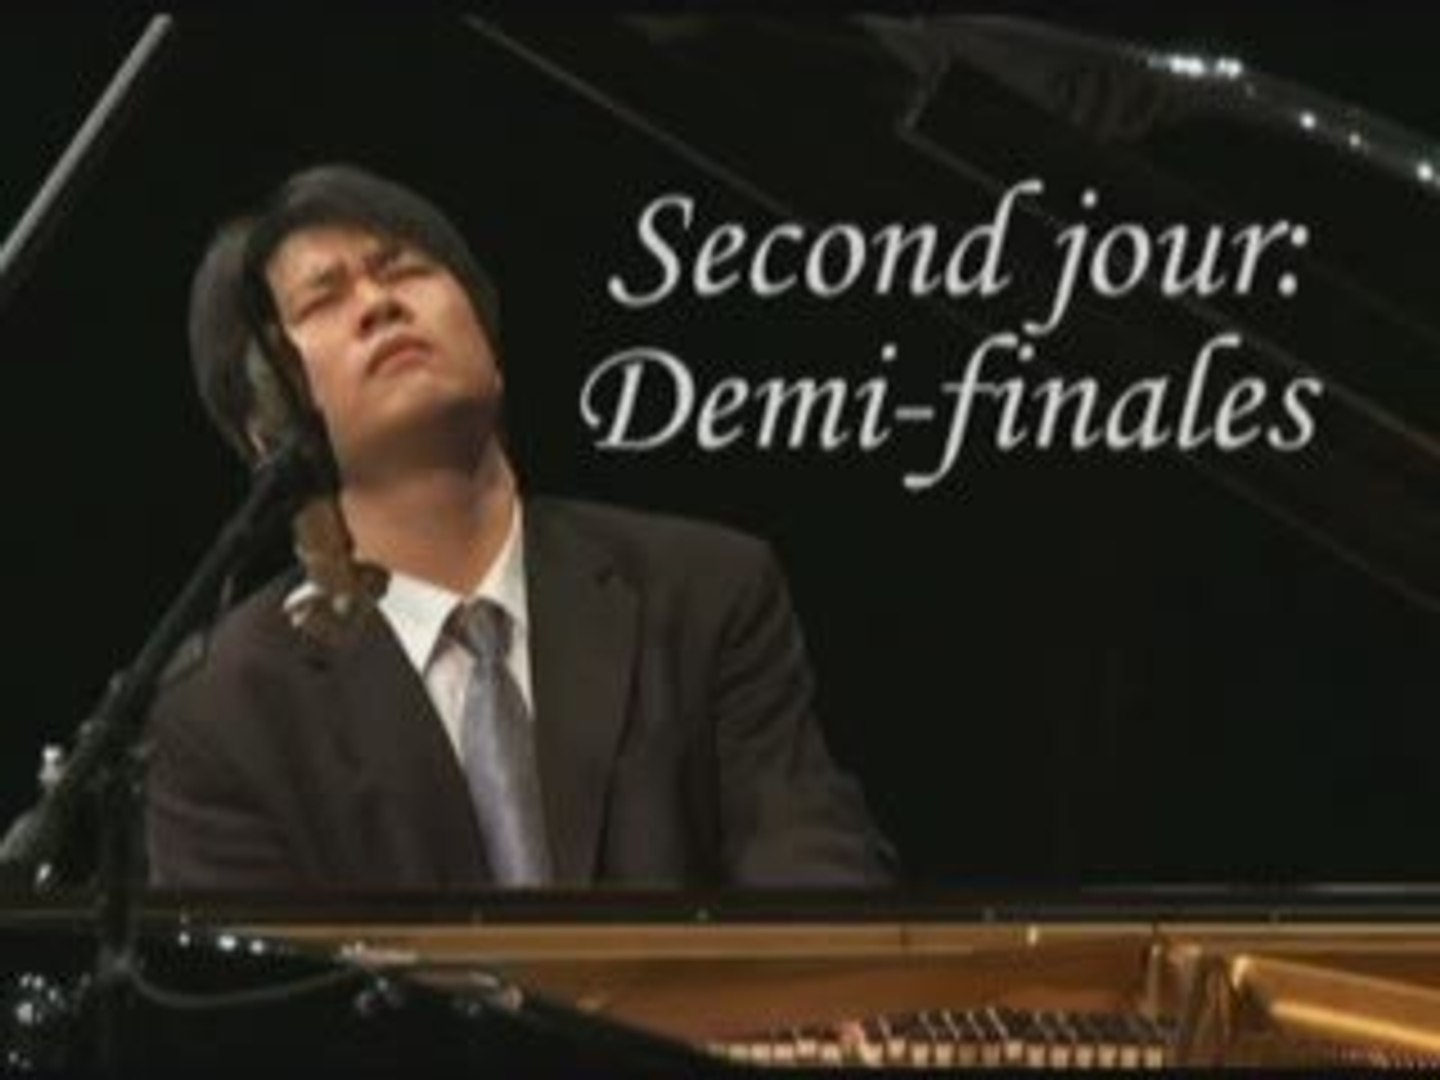 Concours international de pianistes chinois de NTD